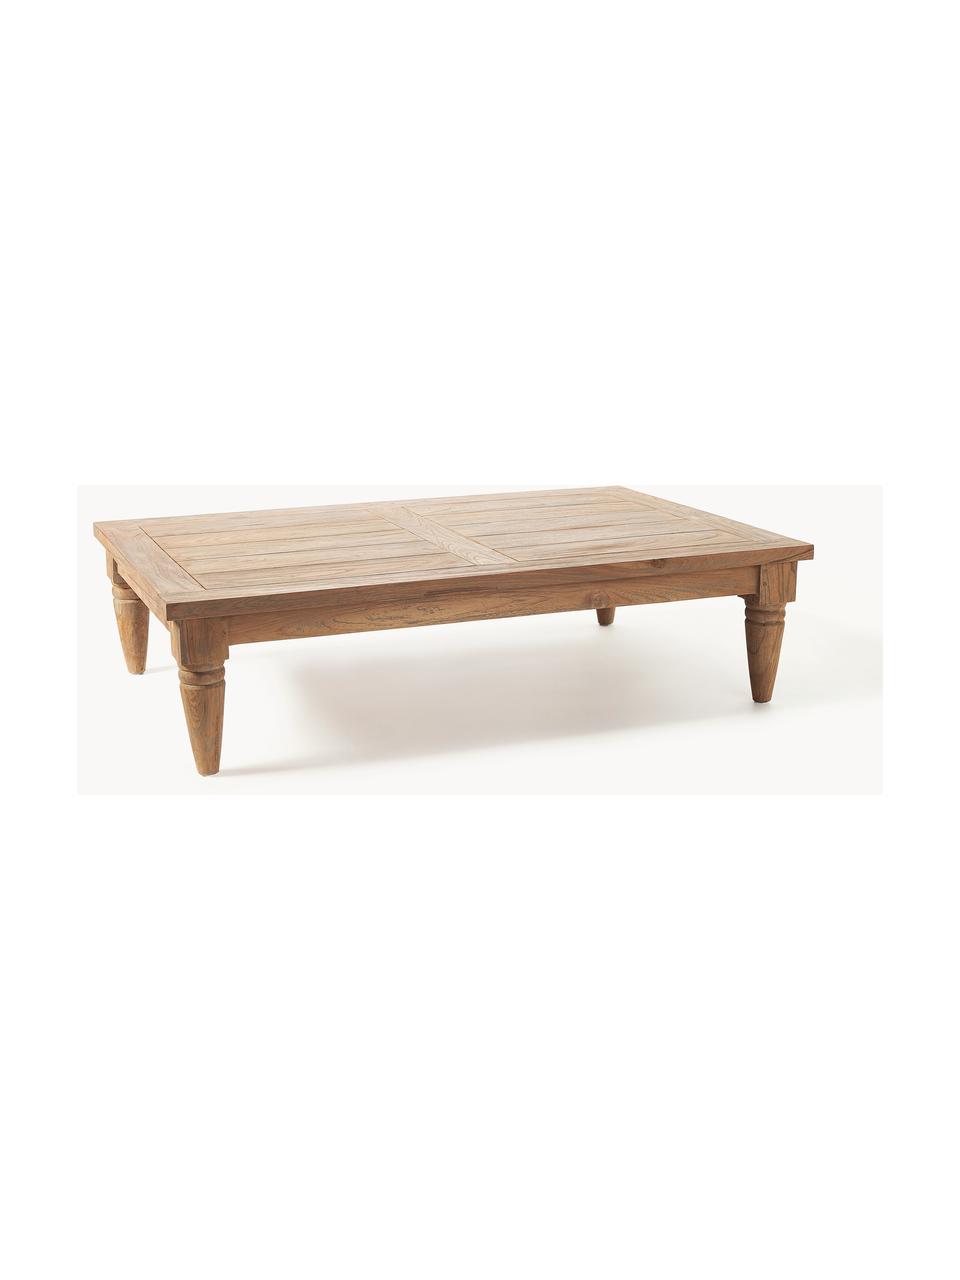 Konferenční stolek z teakového dřeva Bali, Teakové dřevo

Tento produkt je vyroben z udržitelných zdrojů dřeva s certifikací FSC®., Teakové dřevo, Š 120 cm, V 30 cm